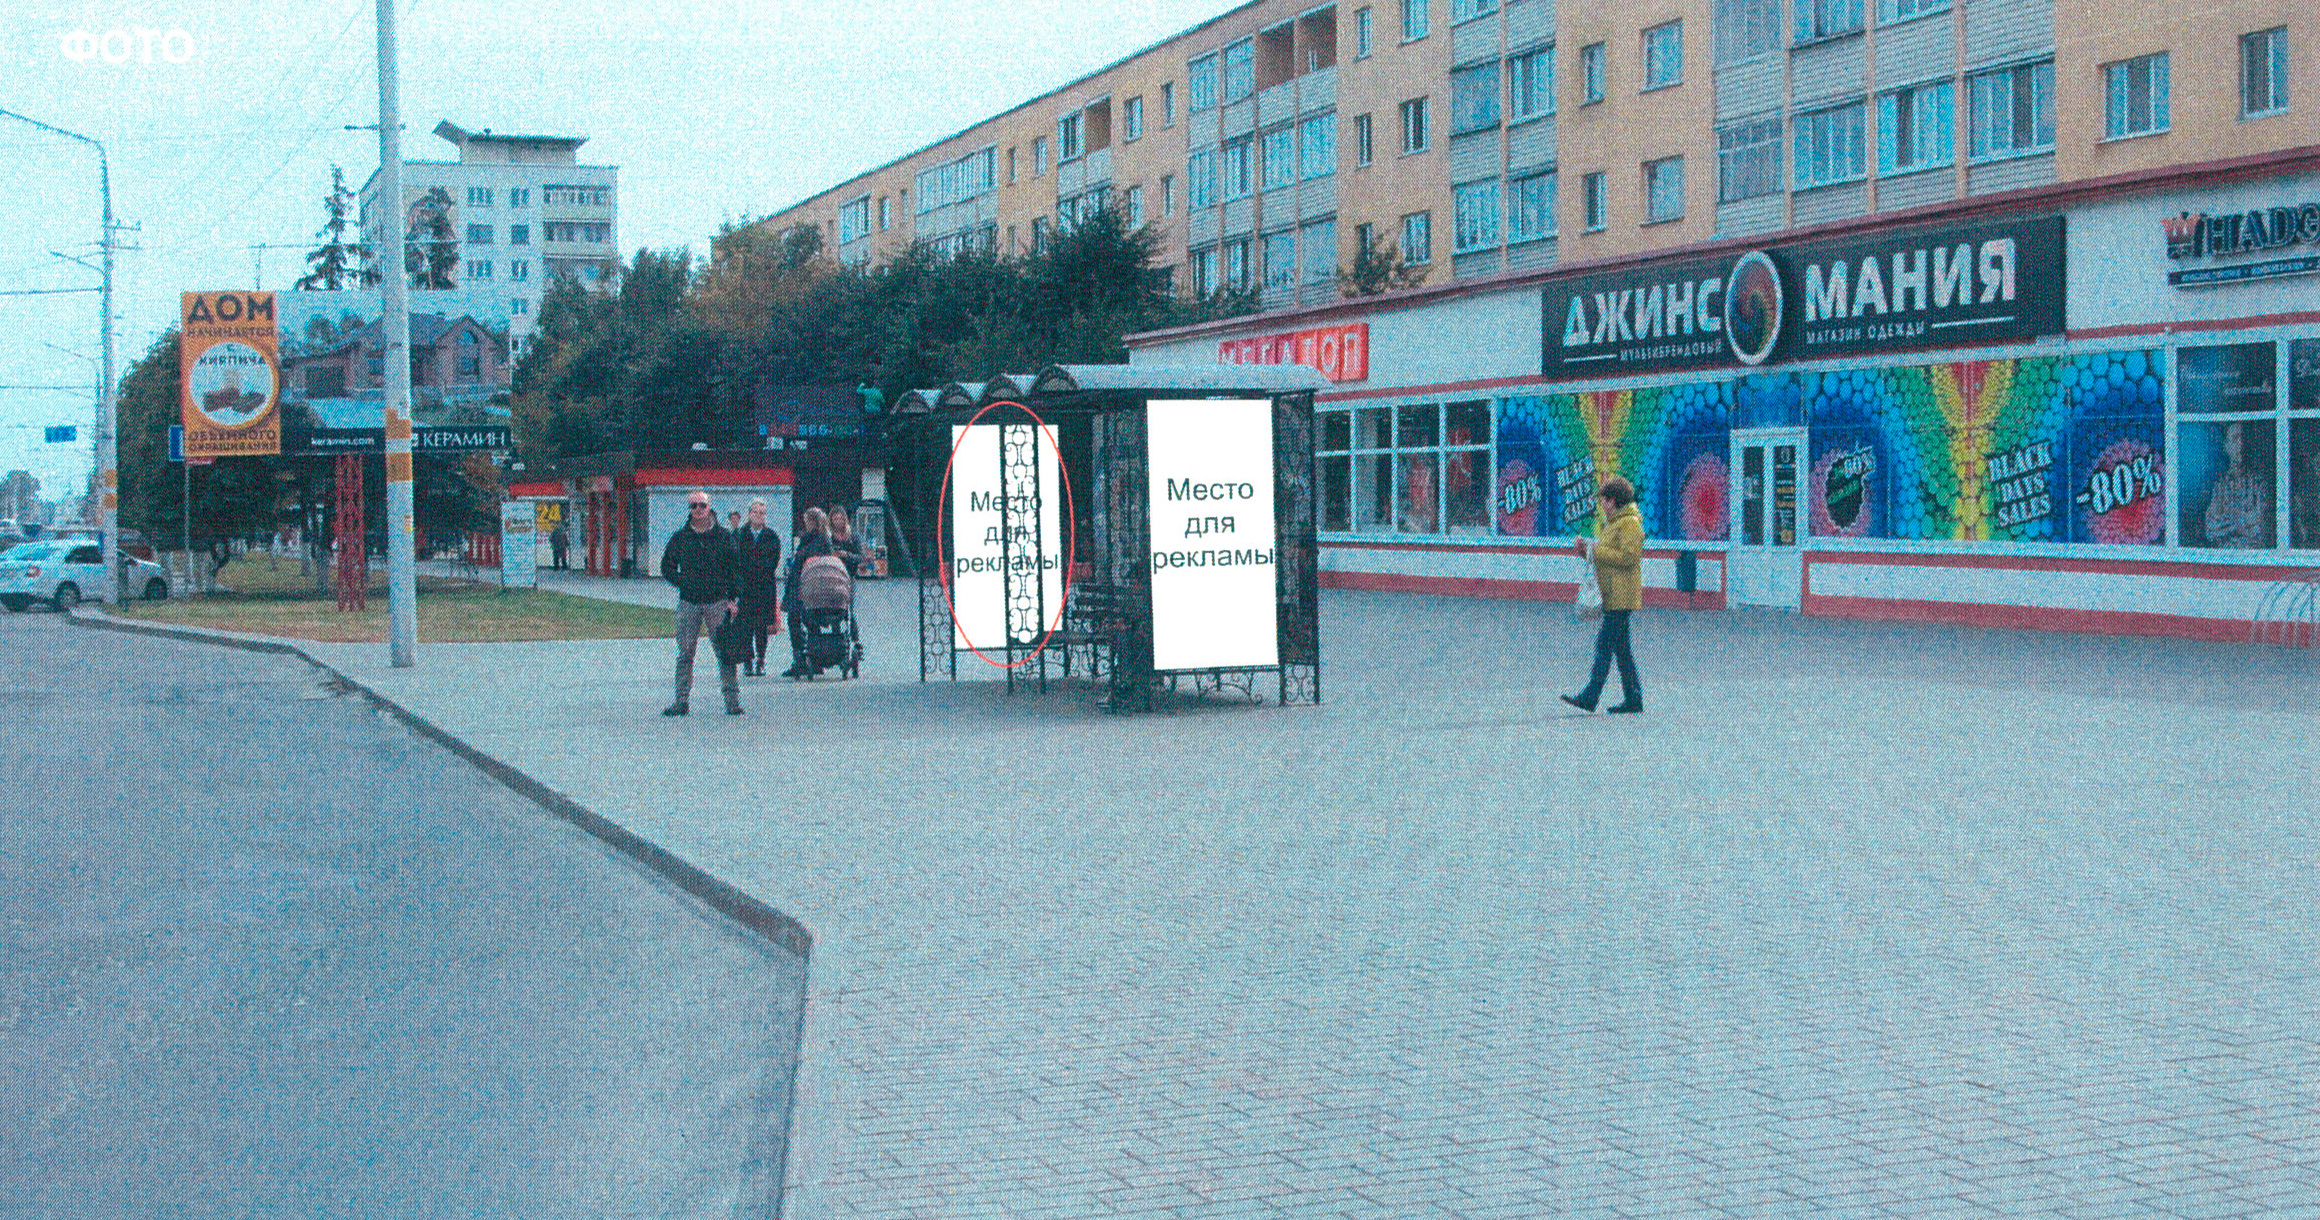 Рекламный щит Бобруйск